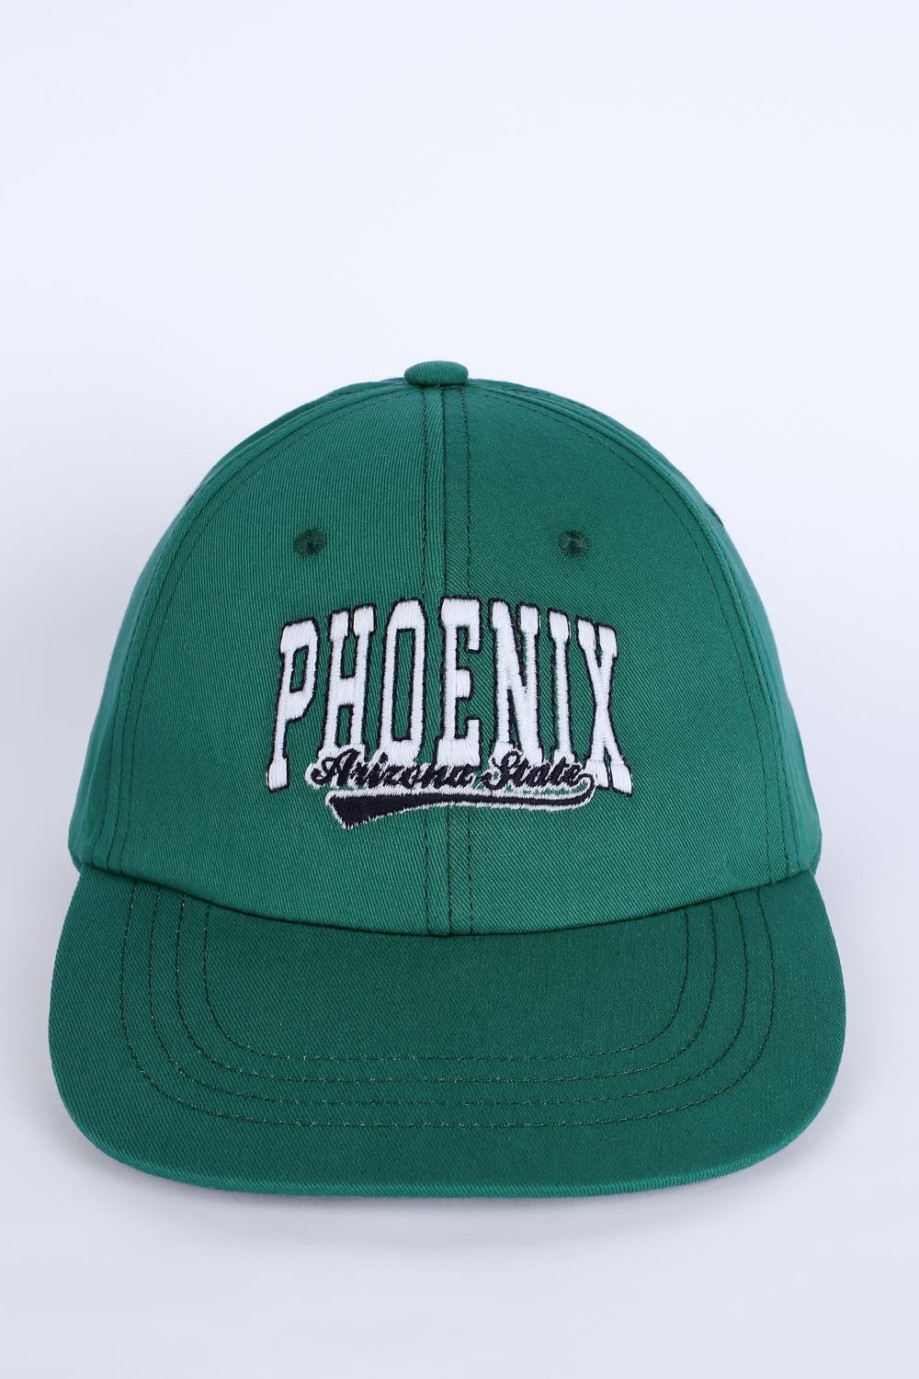 Gorra de visera plana verde oscura con bordado college de Phoenix en frente